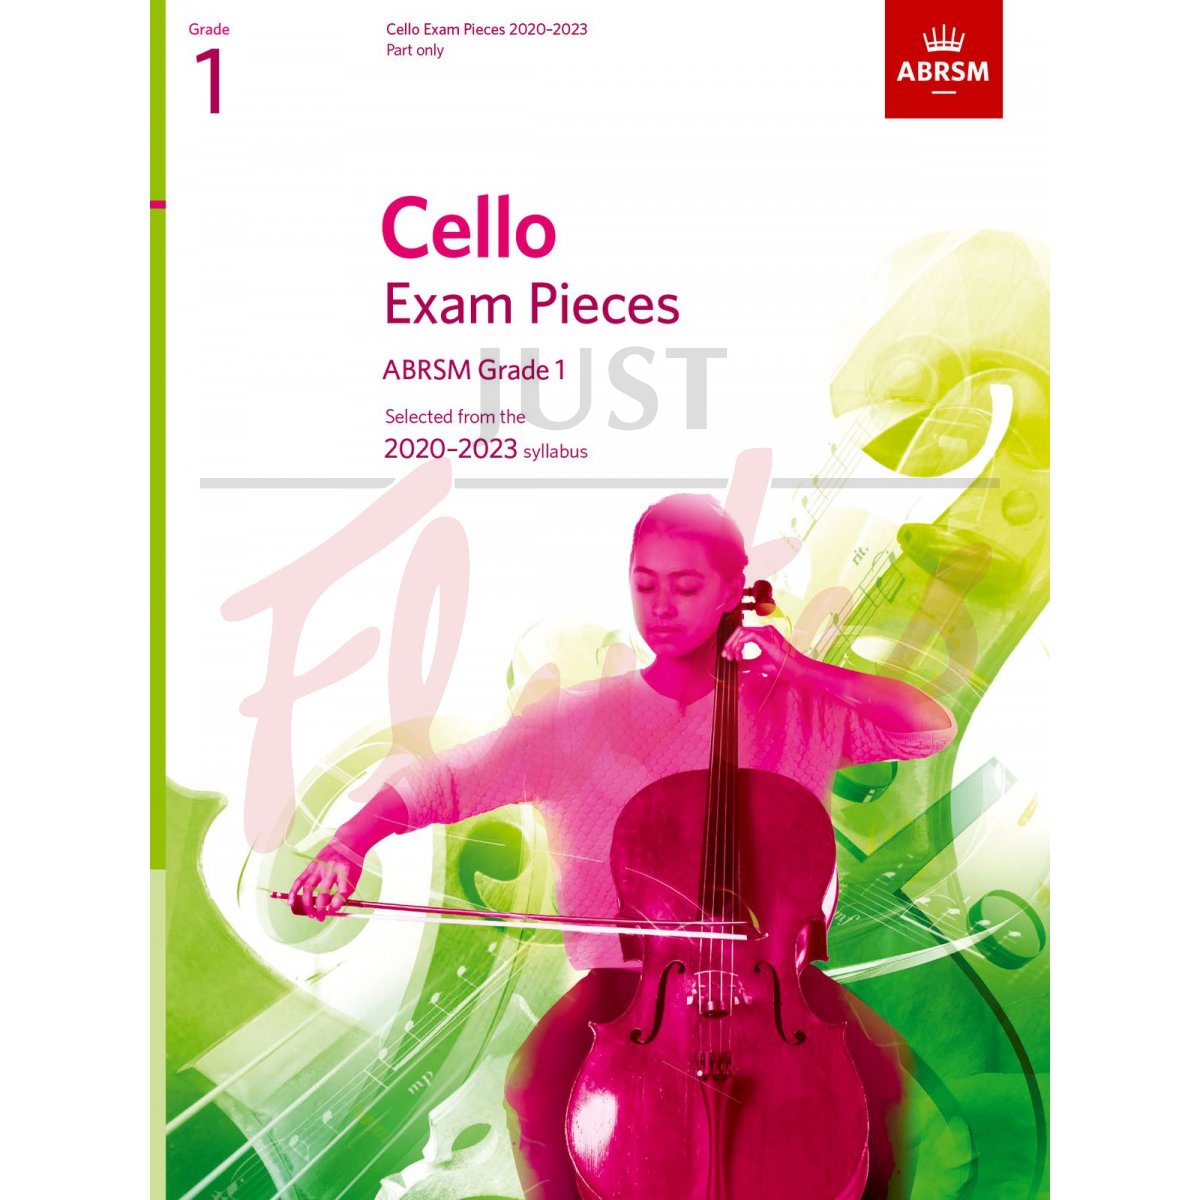 Cello Exam Pieces 2020-2023, Grade 1 [Part Only]